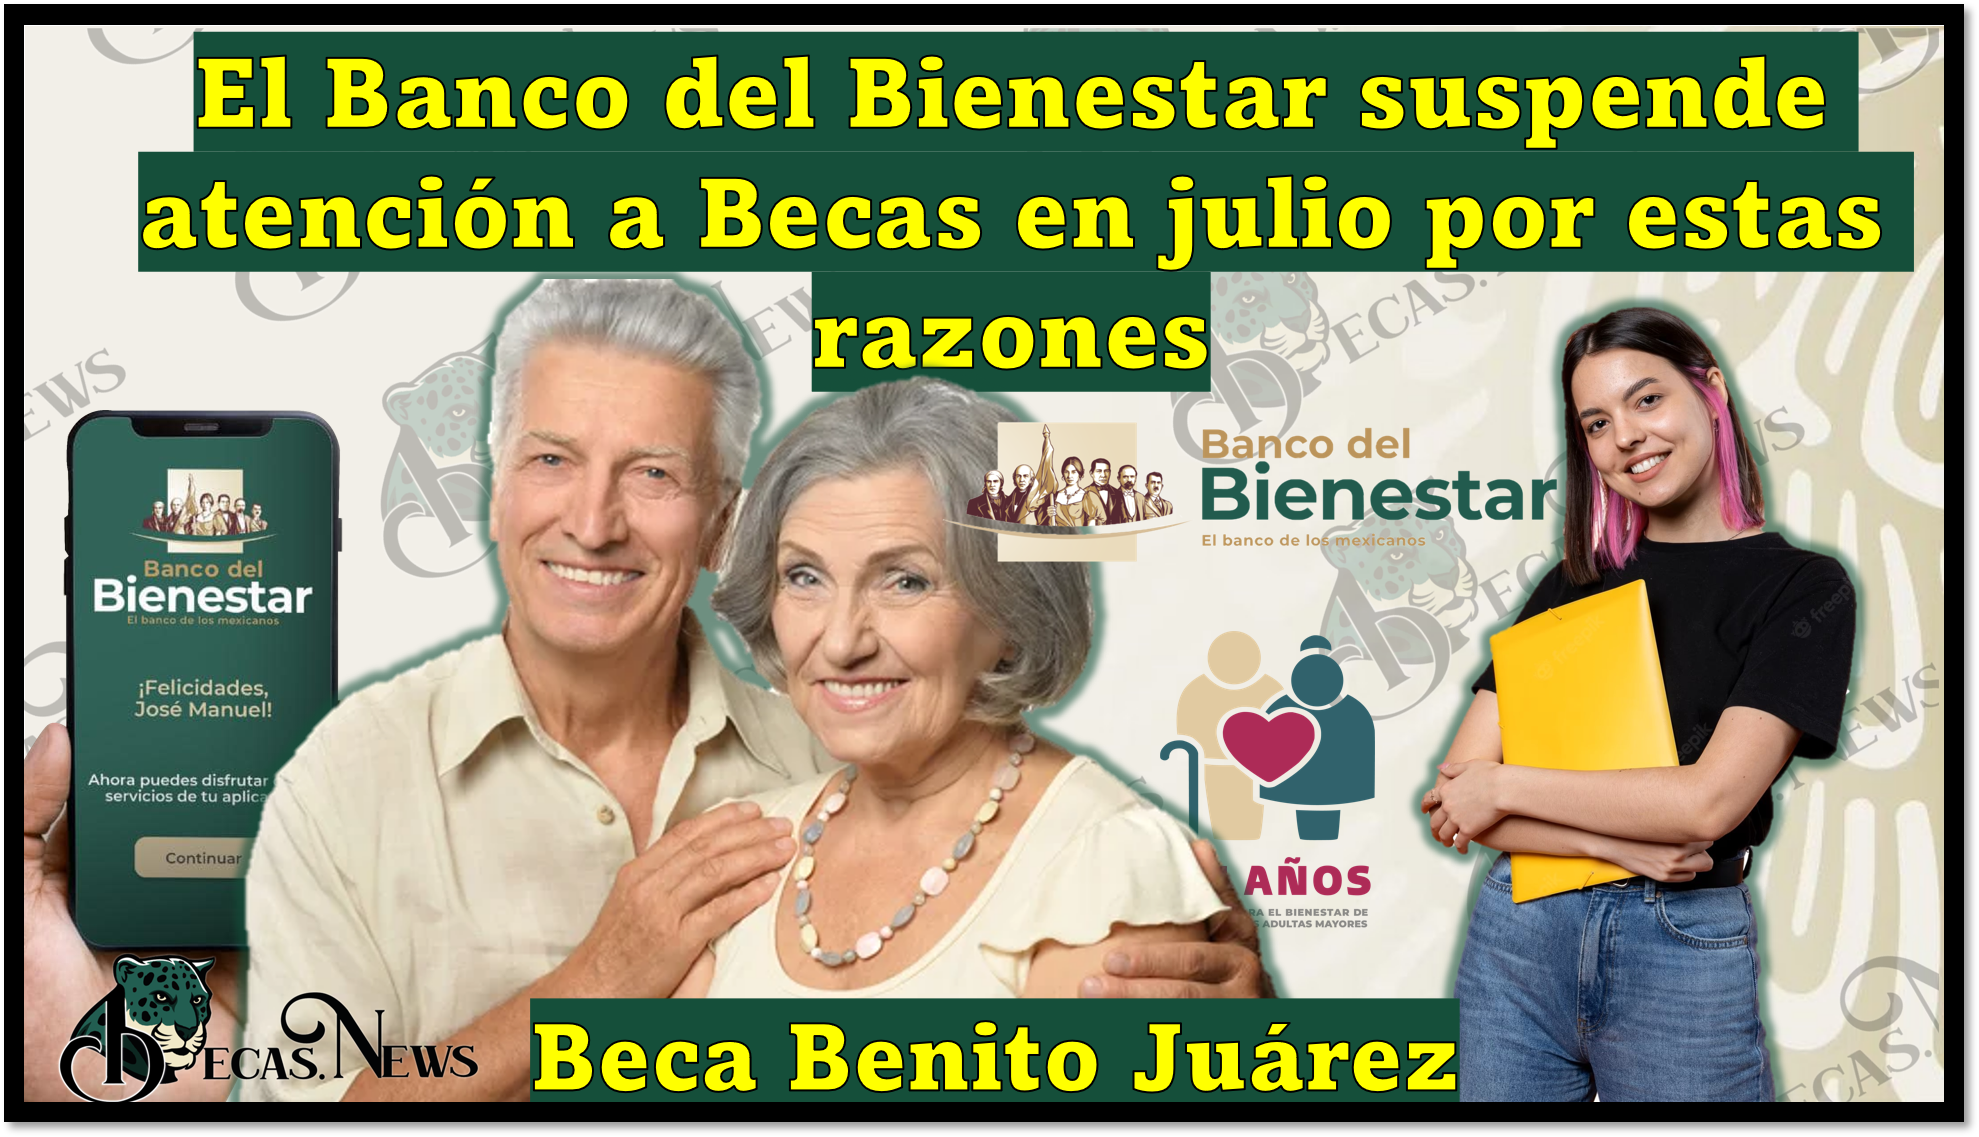 Becas Benito Juárez: El Banco del Bienestar suspende atención a Becas en julio por estas razones